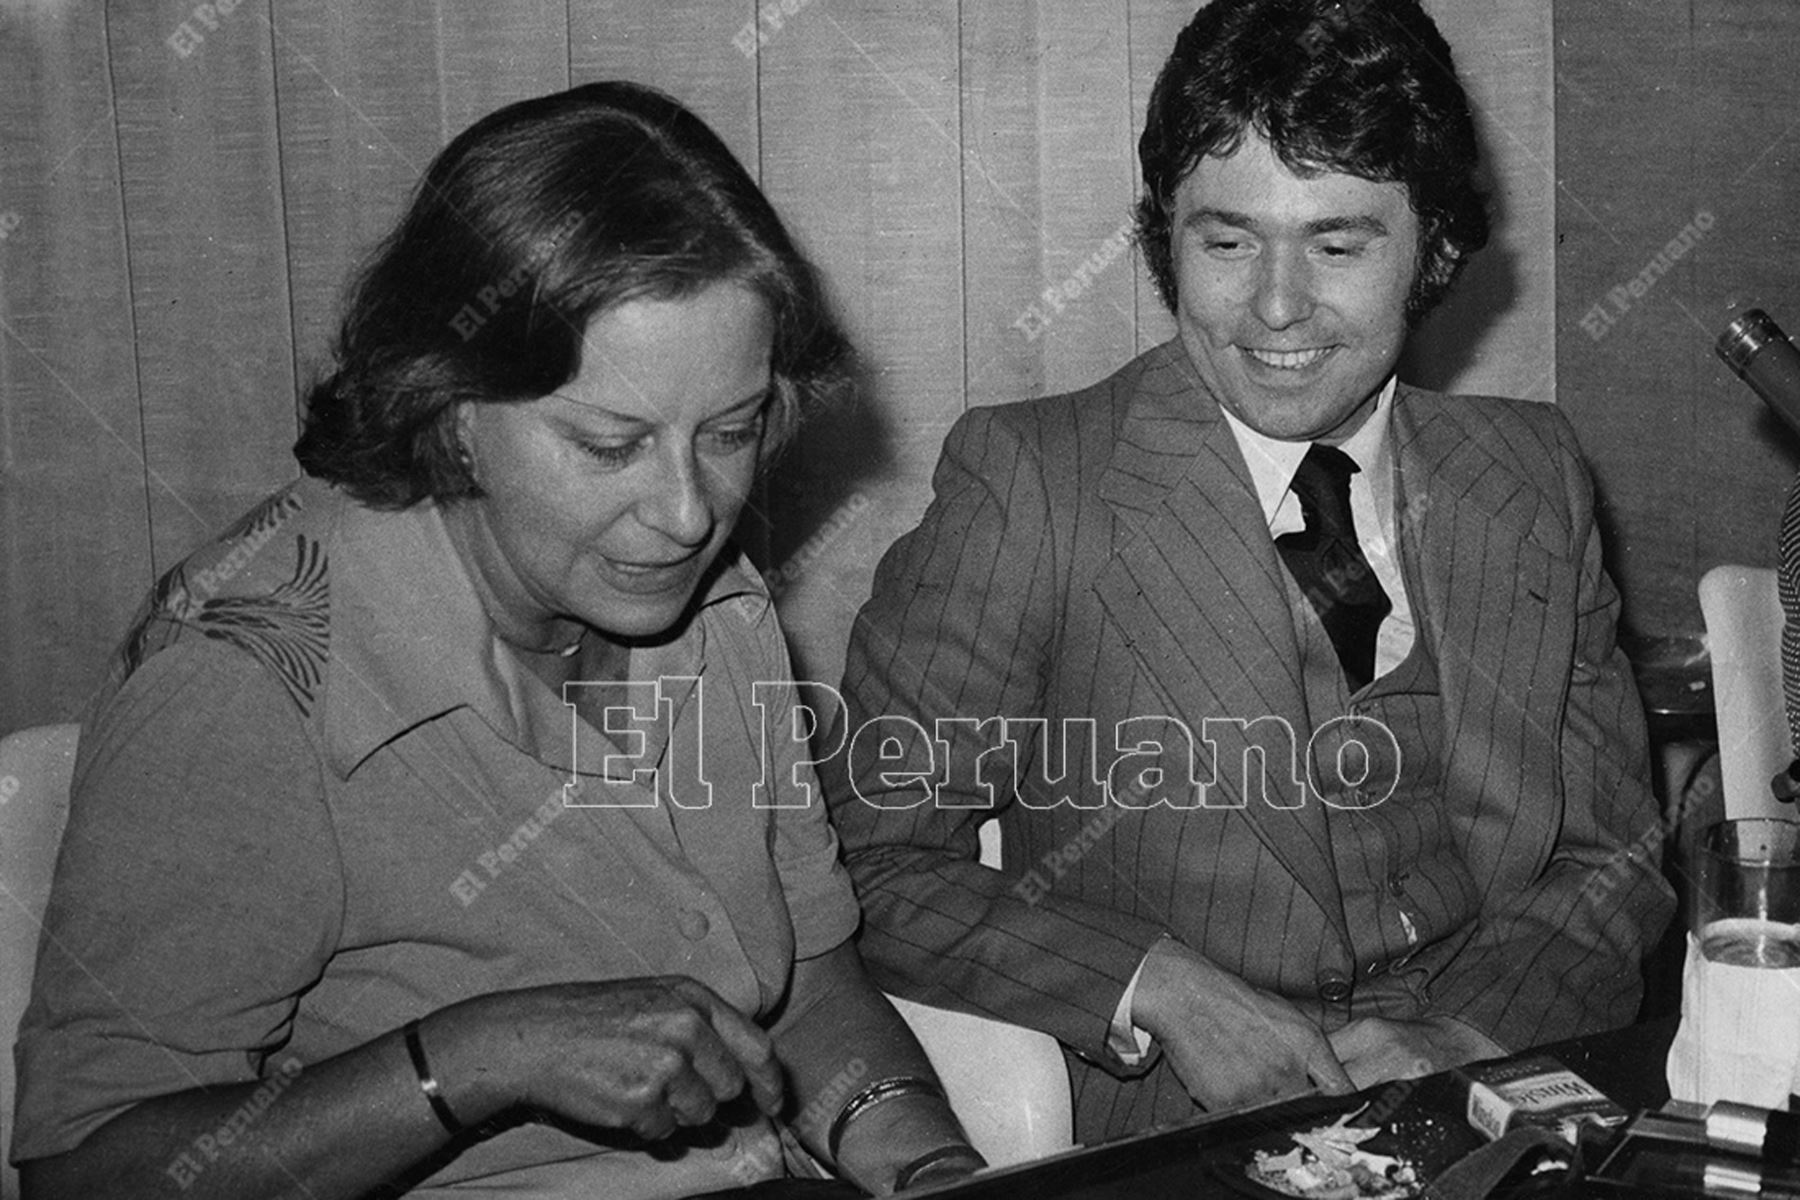 Lima - 9 abril 1977. Chabuca Granda junto al cantante español Raphael en una conferencia de prensa. Foto: Archivo Histórico de El Peruano / Alejandro Aguirre